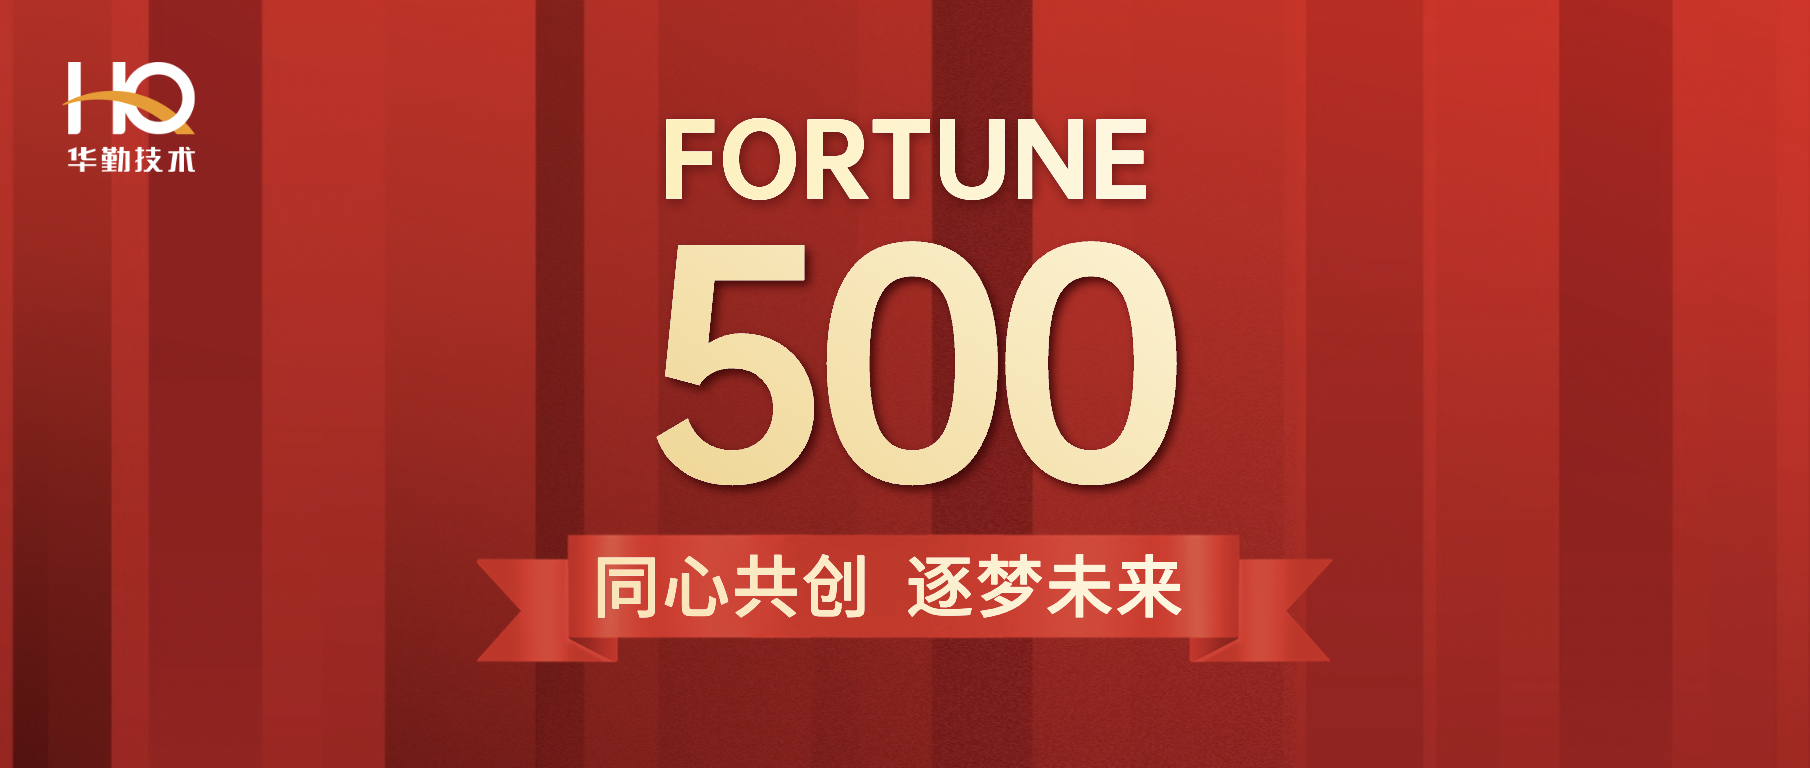 尊龙凯时-人生就是搏技术首登《财富》中国500强位列第213位